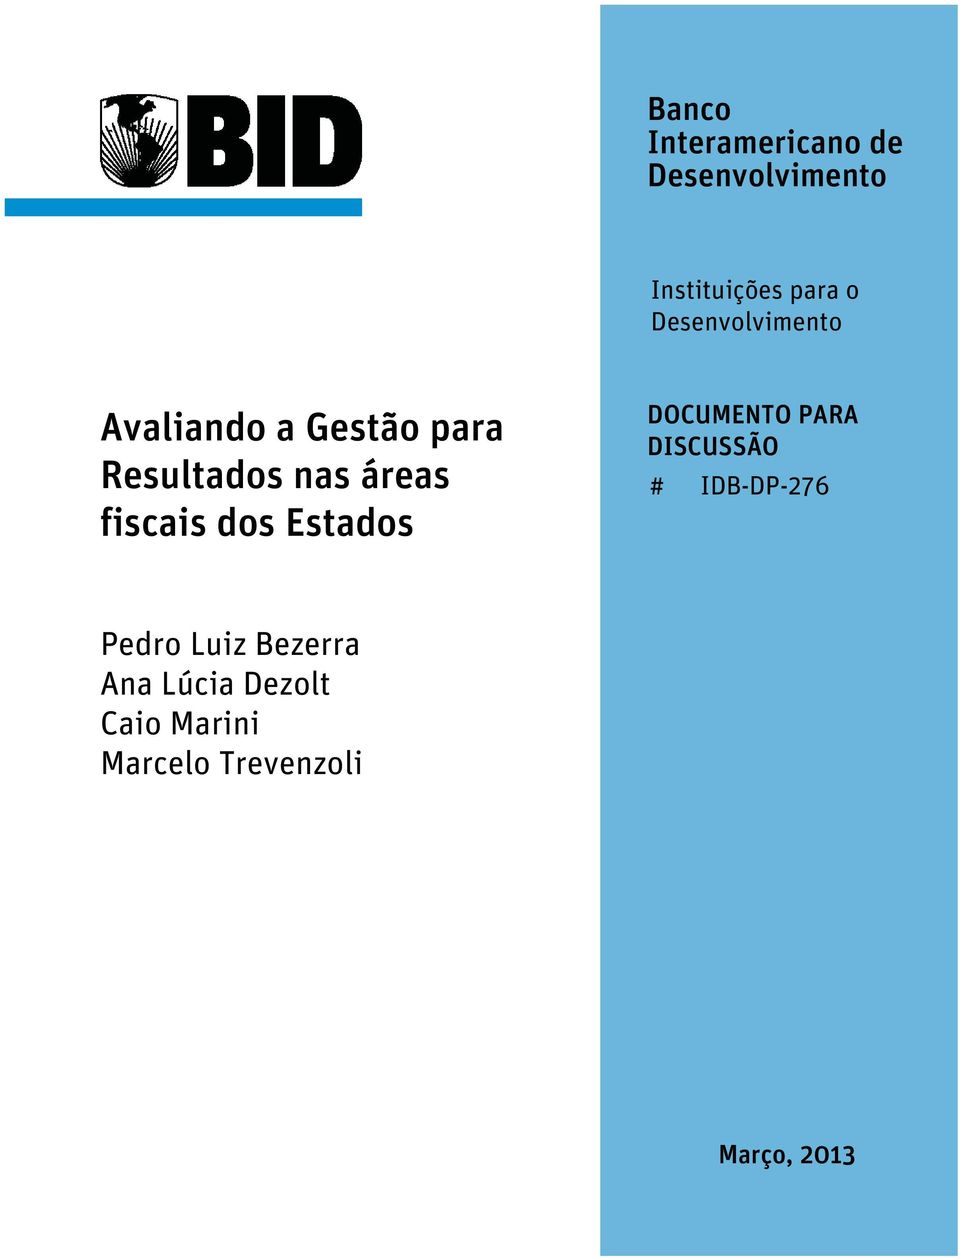 fiscais ds Estads DOCUMENTO PARA DISCUSSÃO # IDB-DP-276